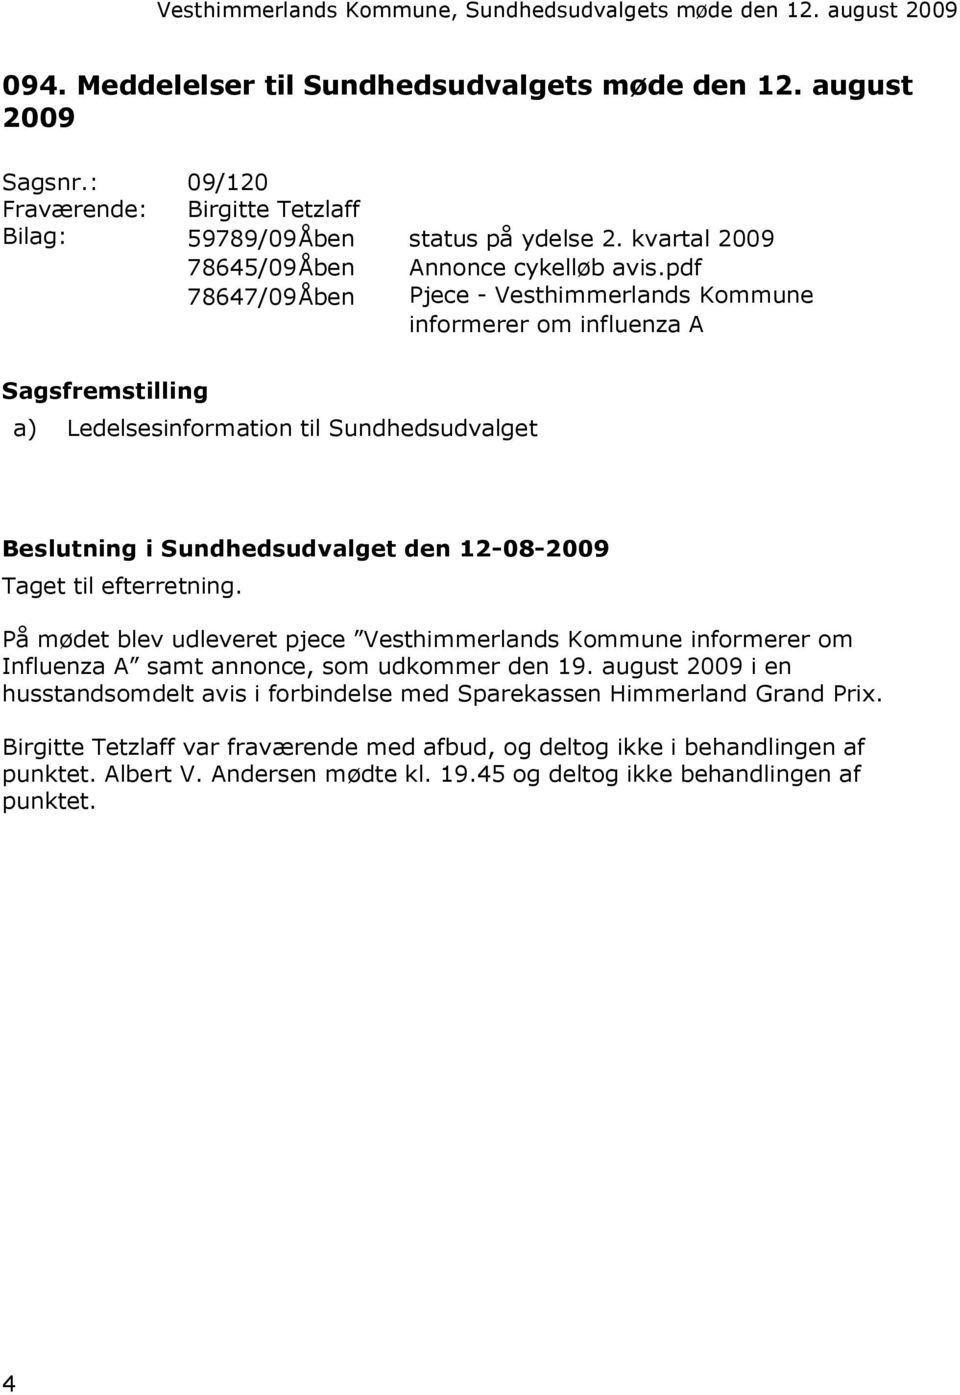 pdf 78647/09Åben Pjece - Vesthimmerlands Kommune informerer om influenza A Sagsfremstilling a) Ledelsesinformation til Sundhedsudvalget Beslutning i Sundhedsudvalget den 12-08-2009 Taget til